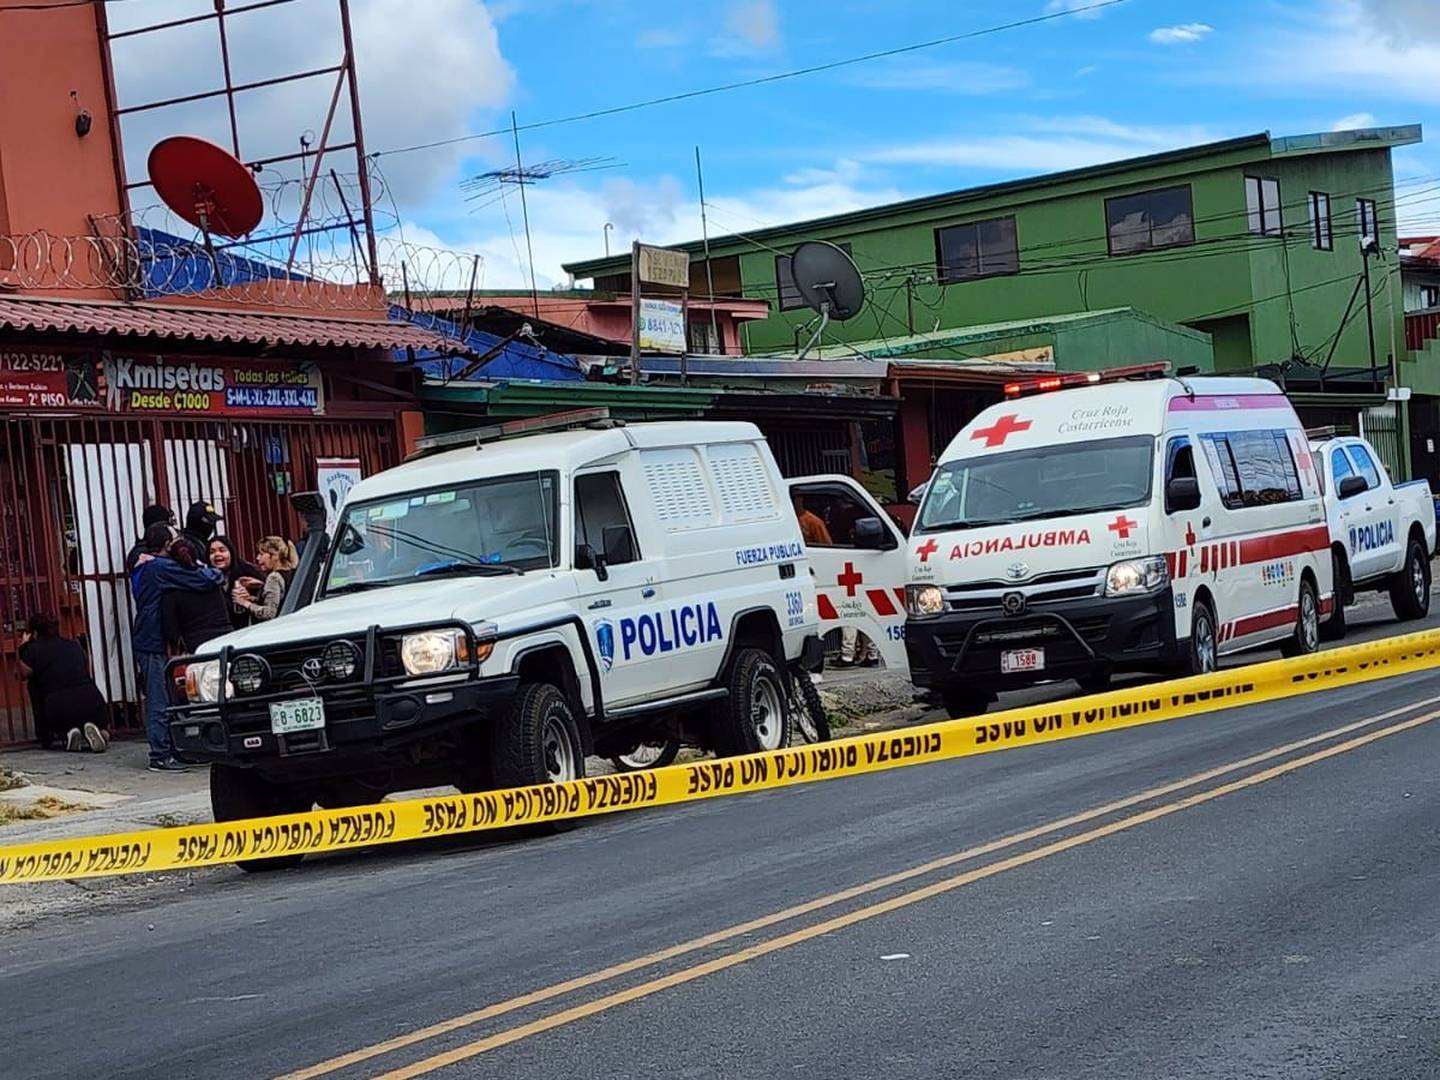 La balacera ocurrió en Concepción de La Unión, frente al Palí. Foto cortesía.